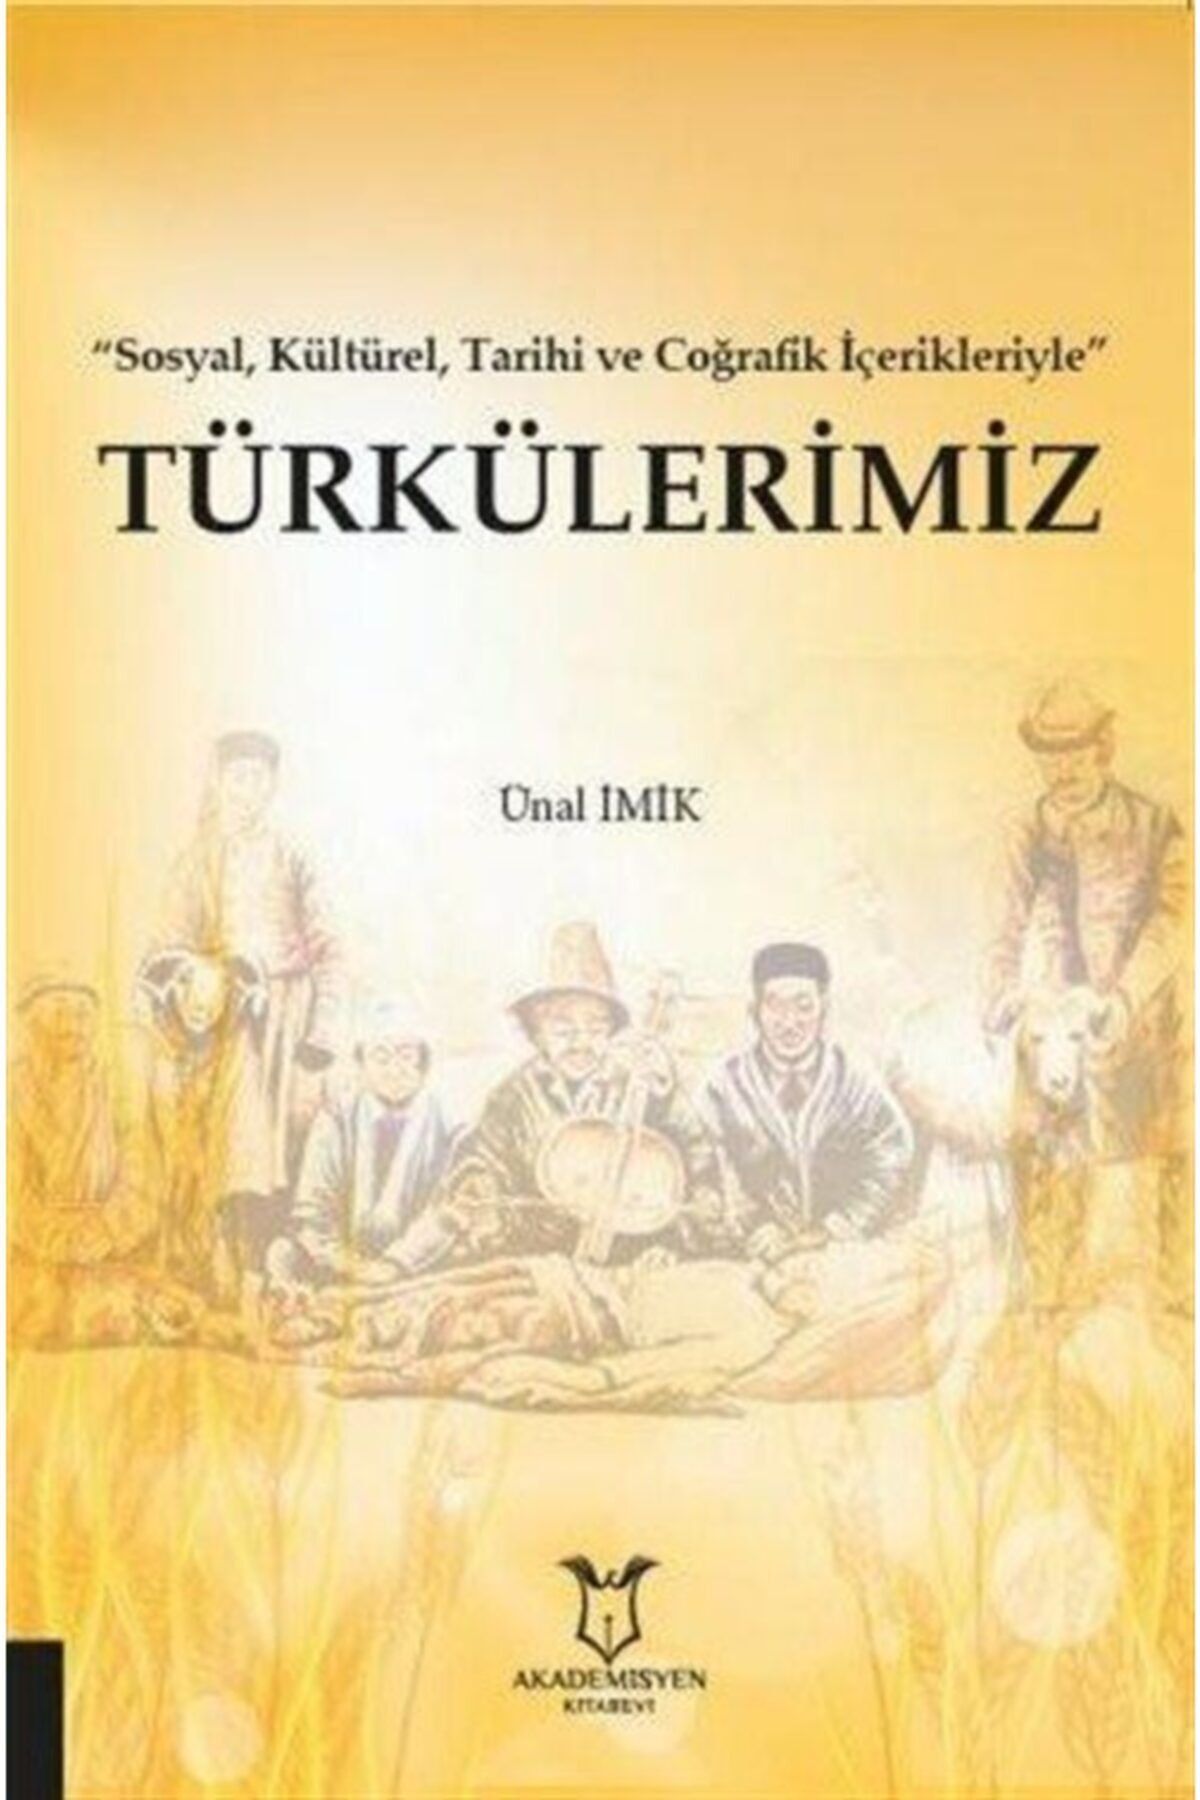 Akademisyen Kitabevi "sosyal, Kültürel, Tarihi Ve Coğrafik Içerikleriyle" Türkülerimiz